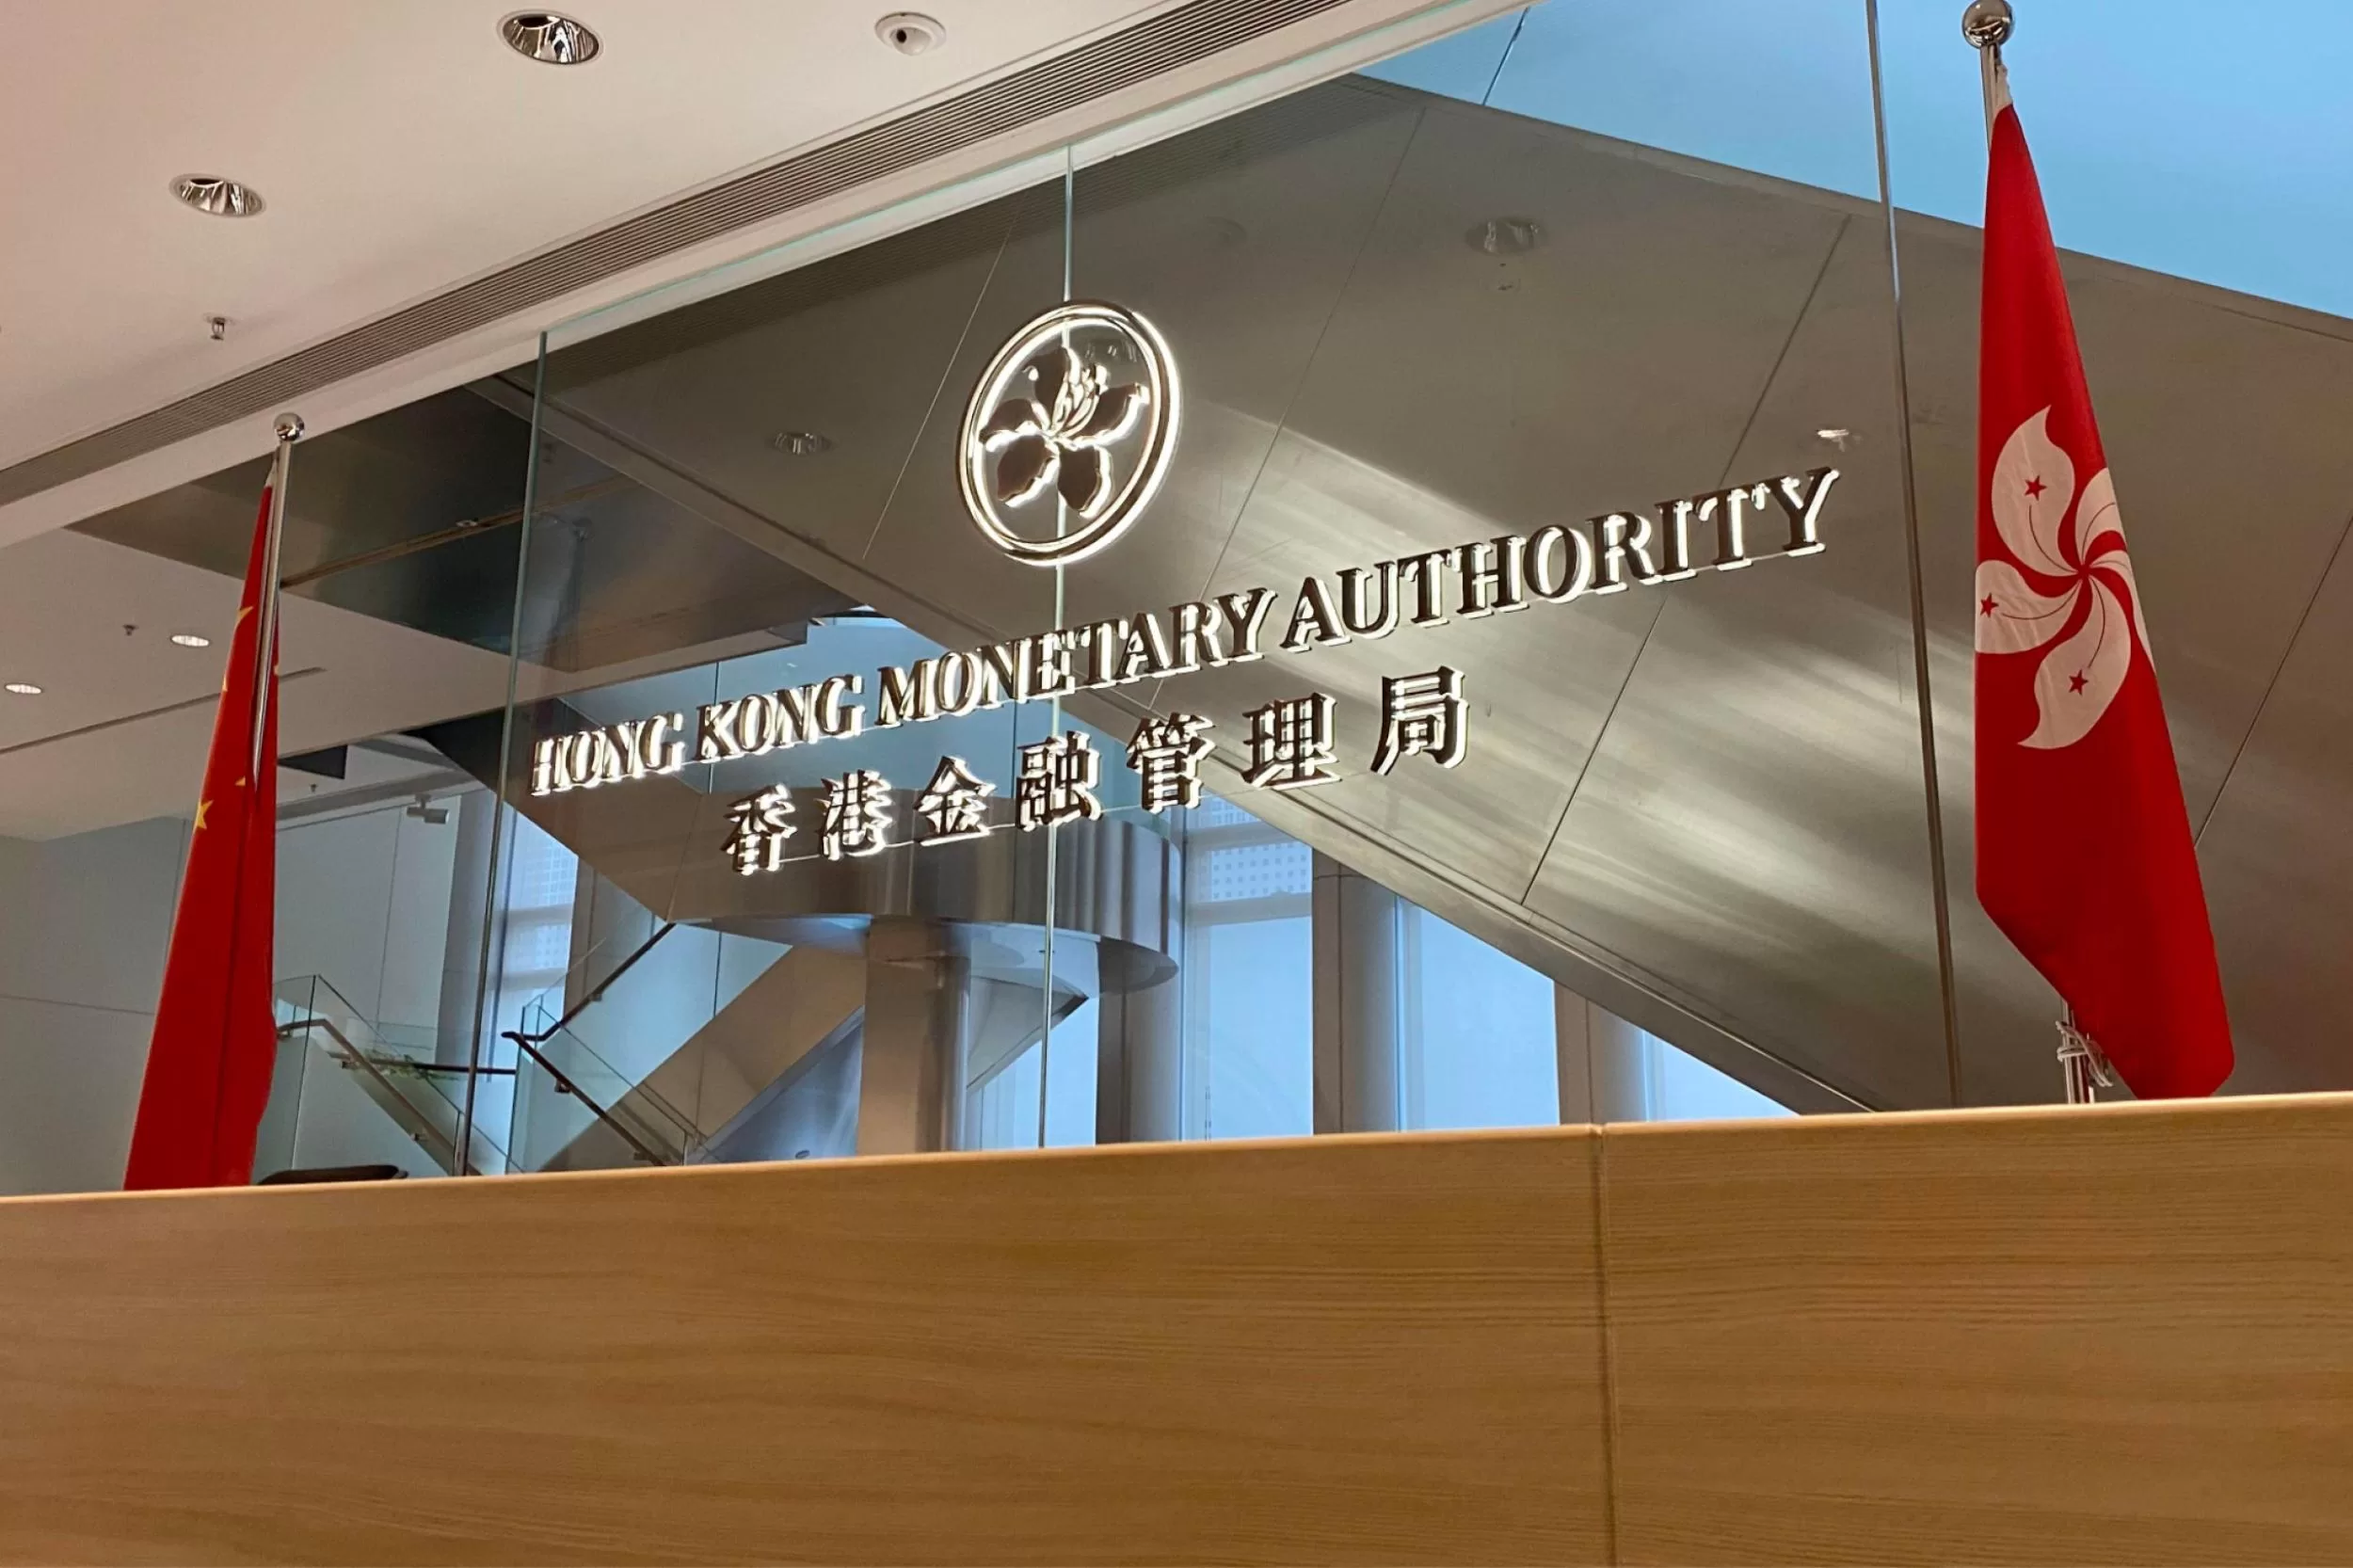 Hong Kong Monetary Authority HKMA